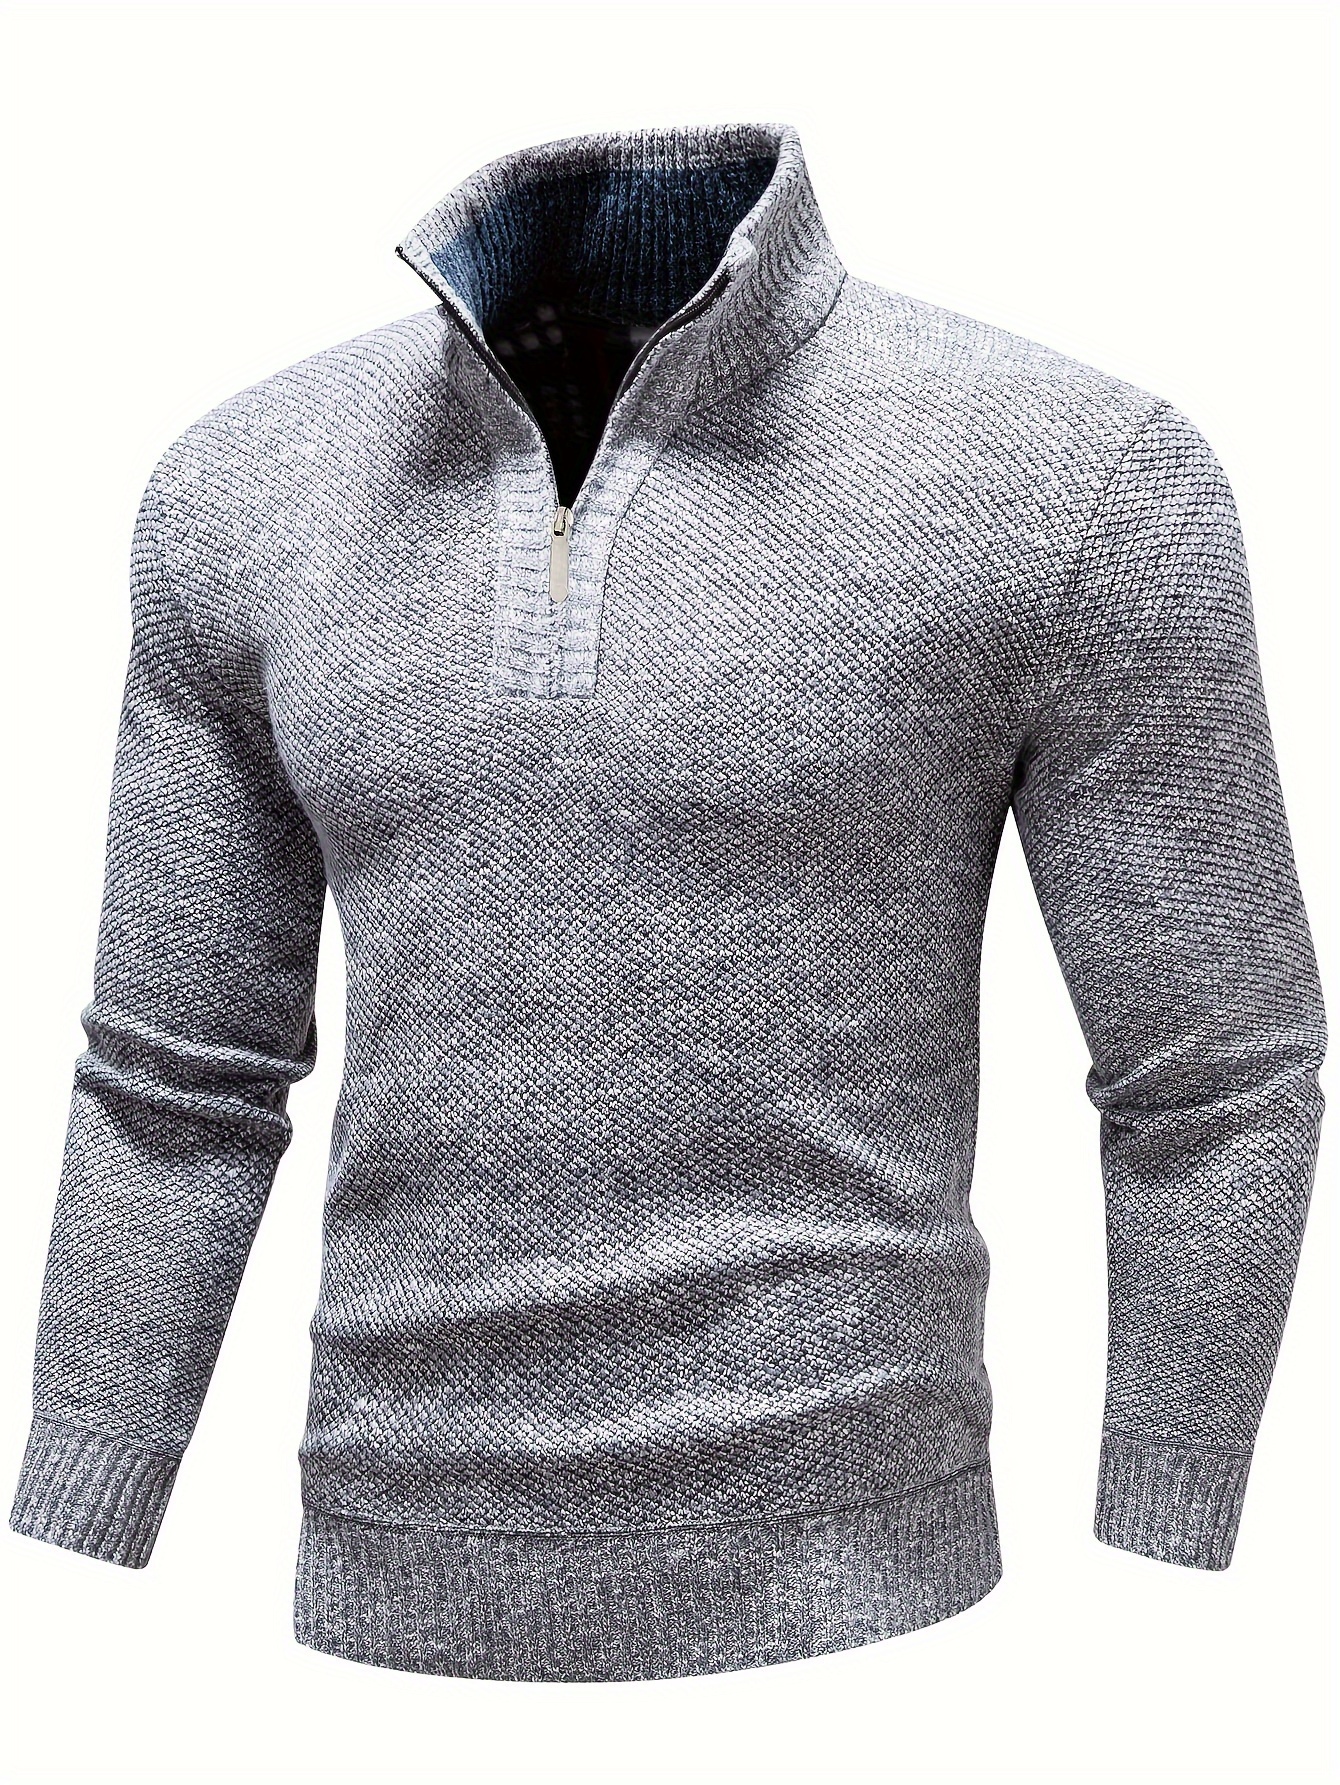 Comprar Nuevo suéter de punto cálido de invierno para hombre, Jersey  informal de cuello alto con personalidad fresca